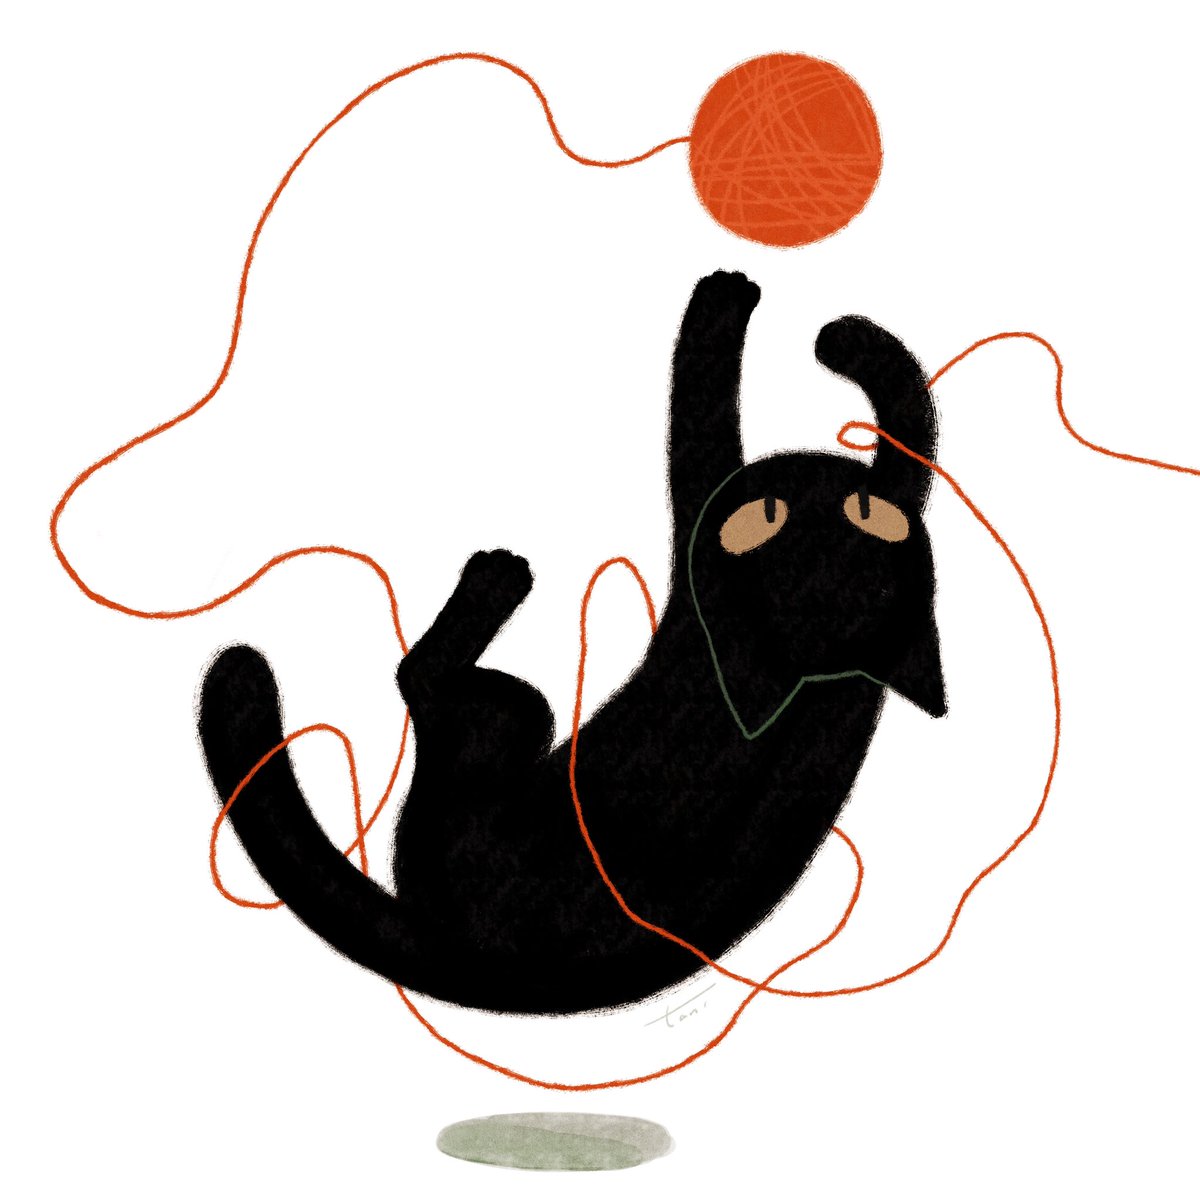 「毛糸とじゃれる猫🧶
#イラスト
#illustration 」|taniのイラスト